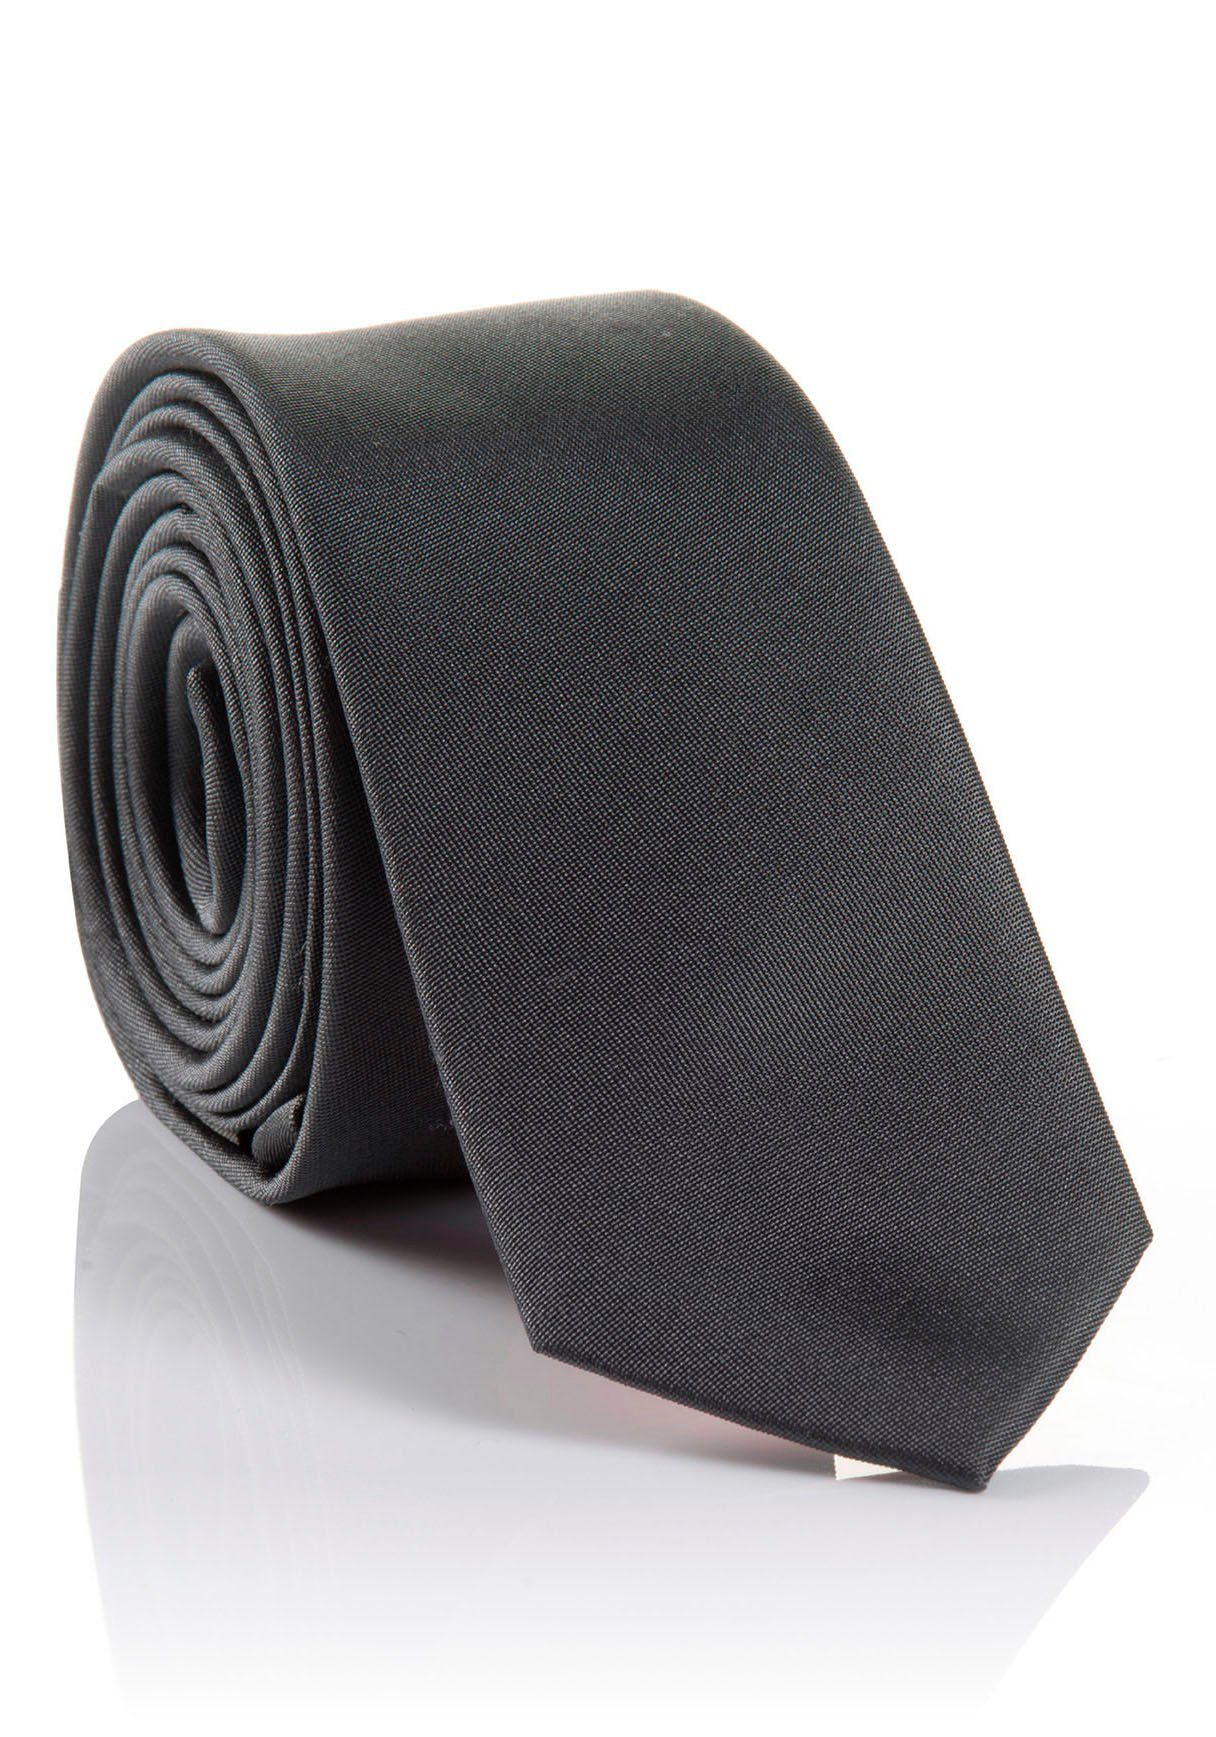 MONTI Krawatte Seidenkrawatte LORENZO hohem grey Hochwertig Tragekomfort verarbeitete mit